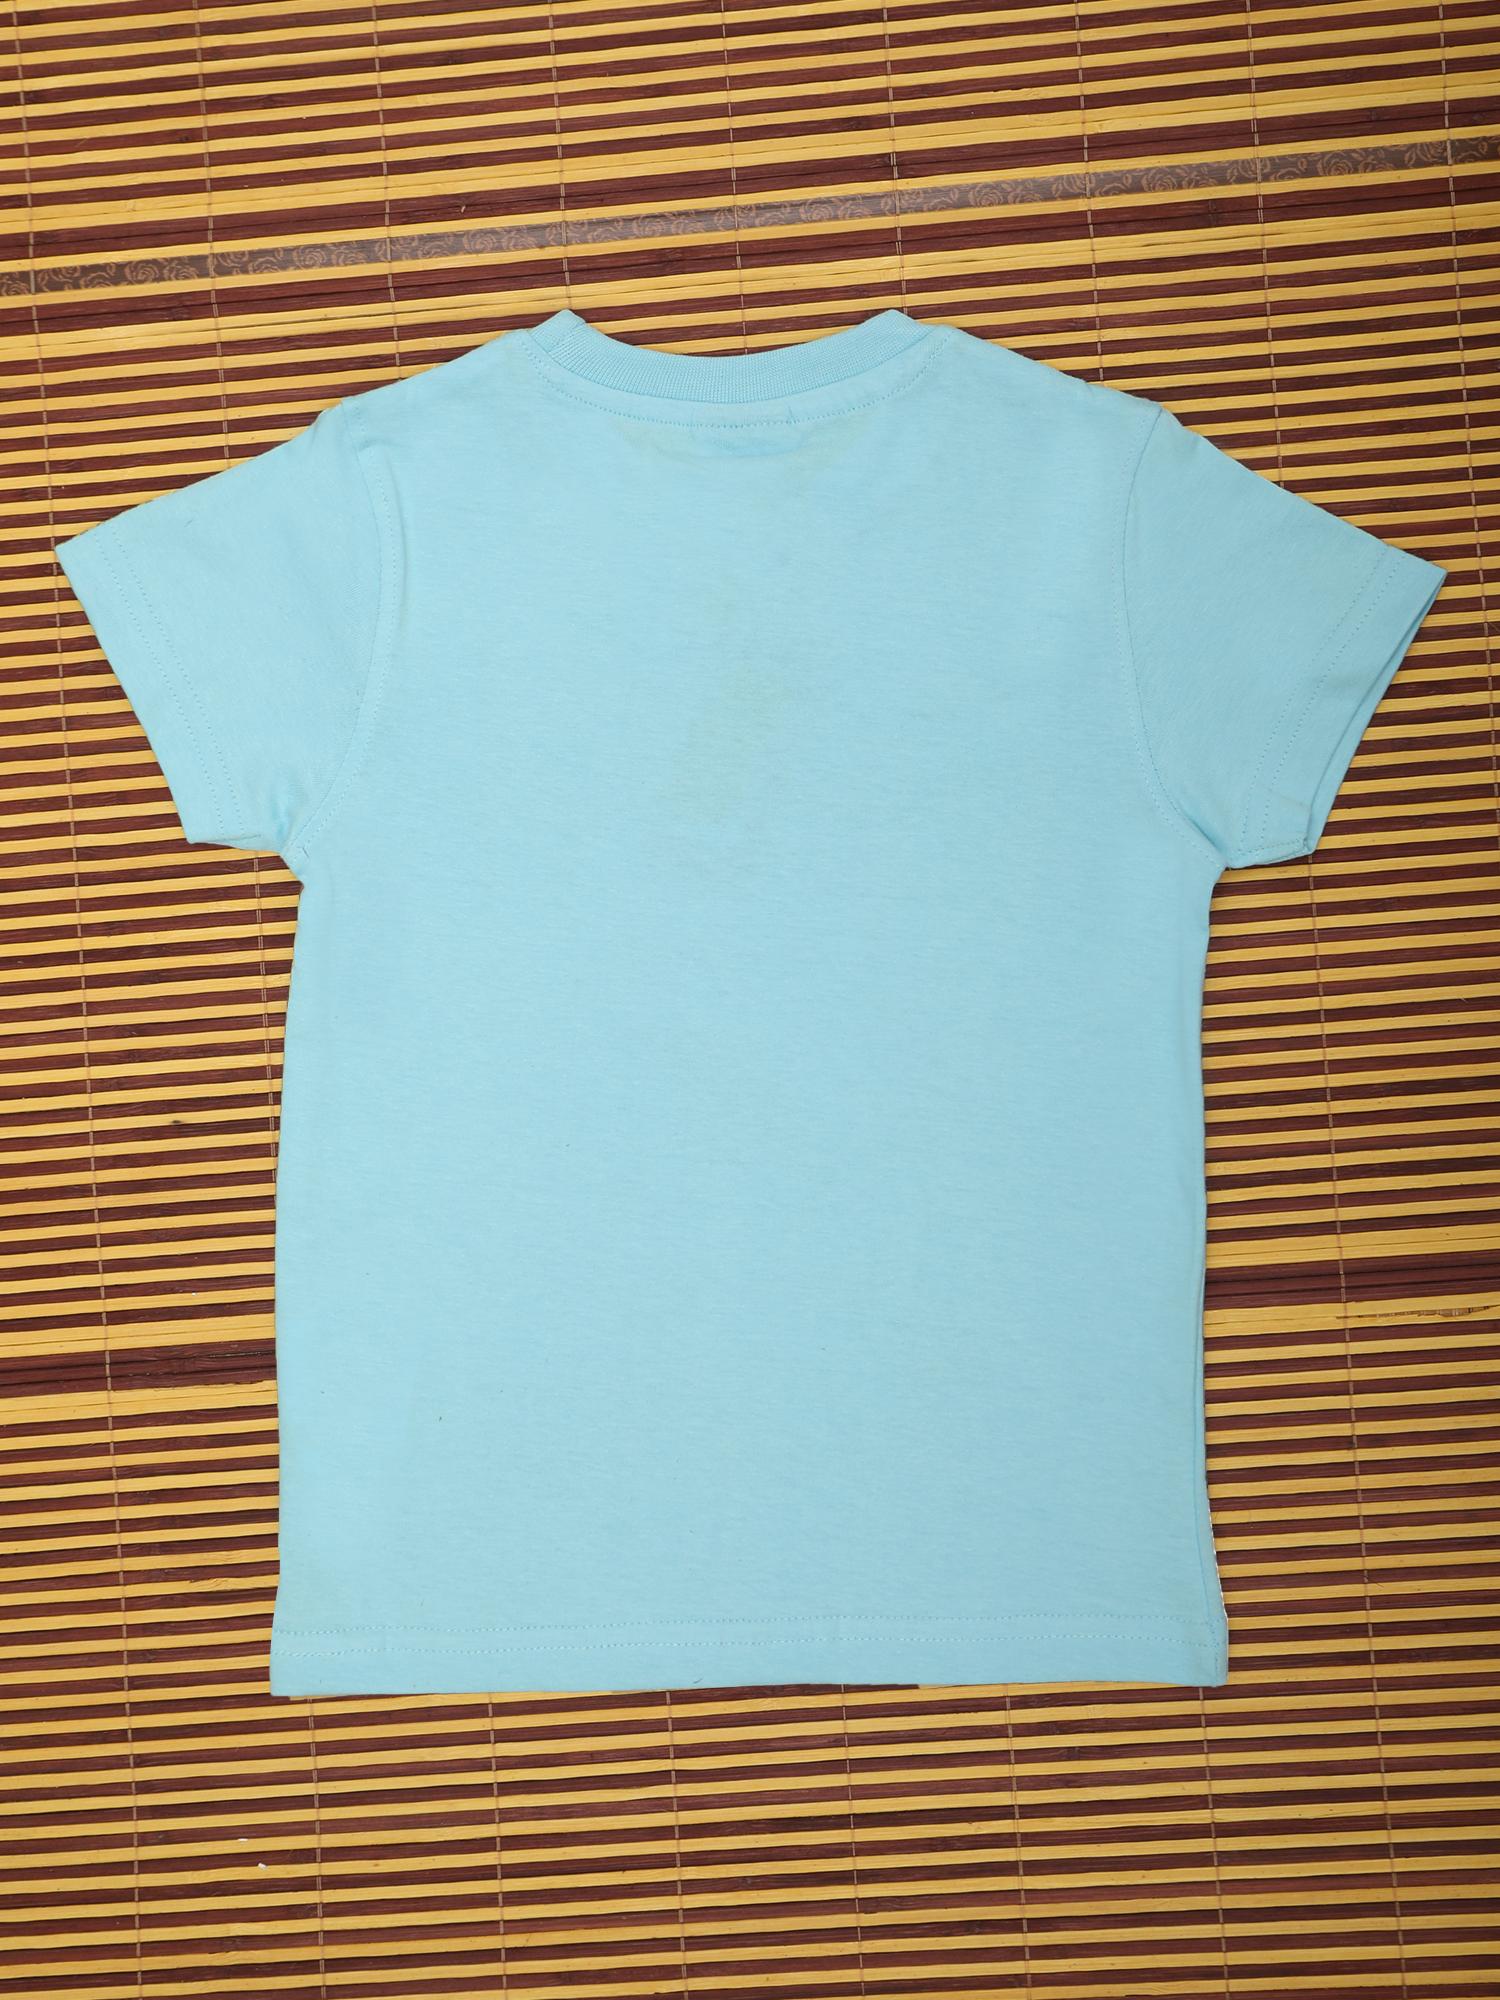 BYOStyle Boys Cotton Tshirt Printed